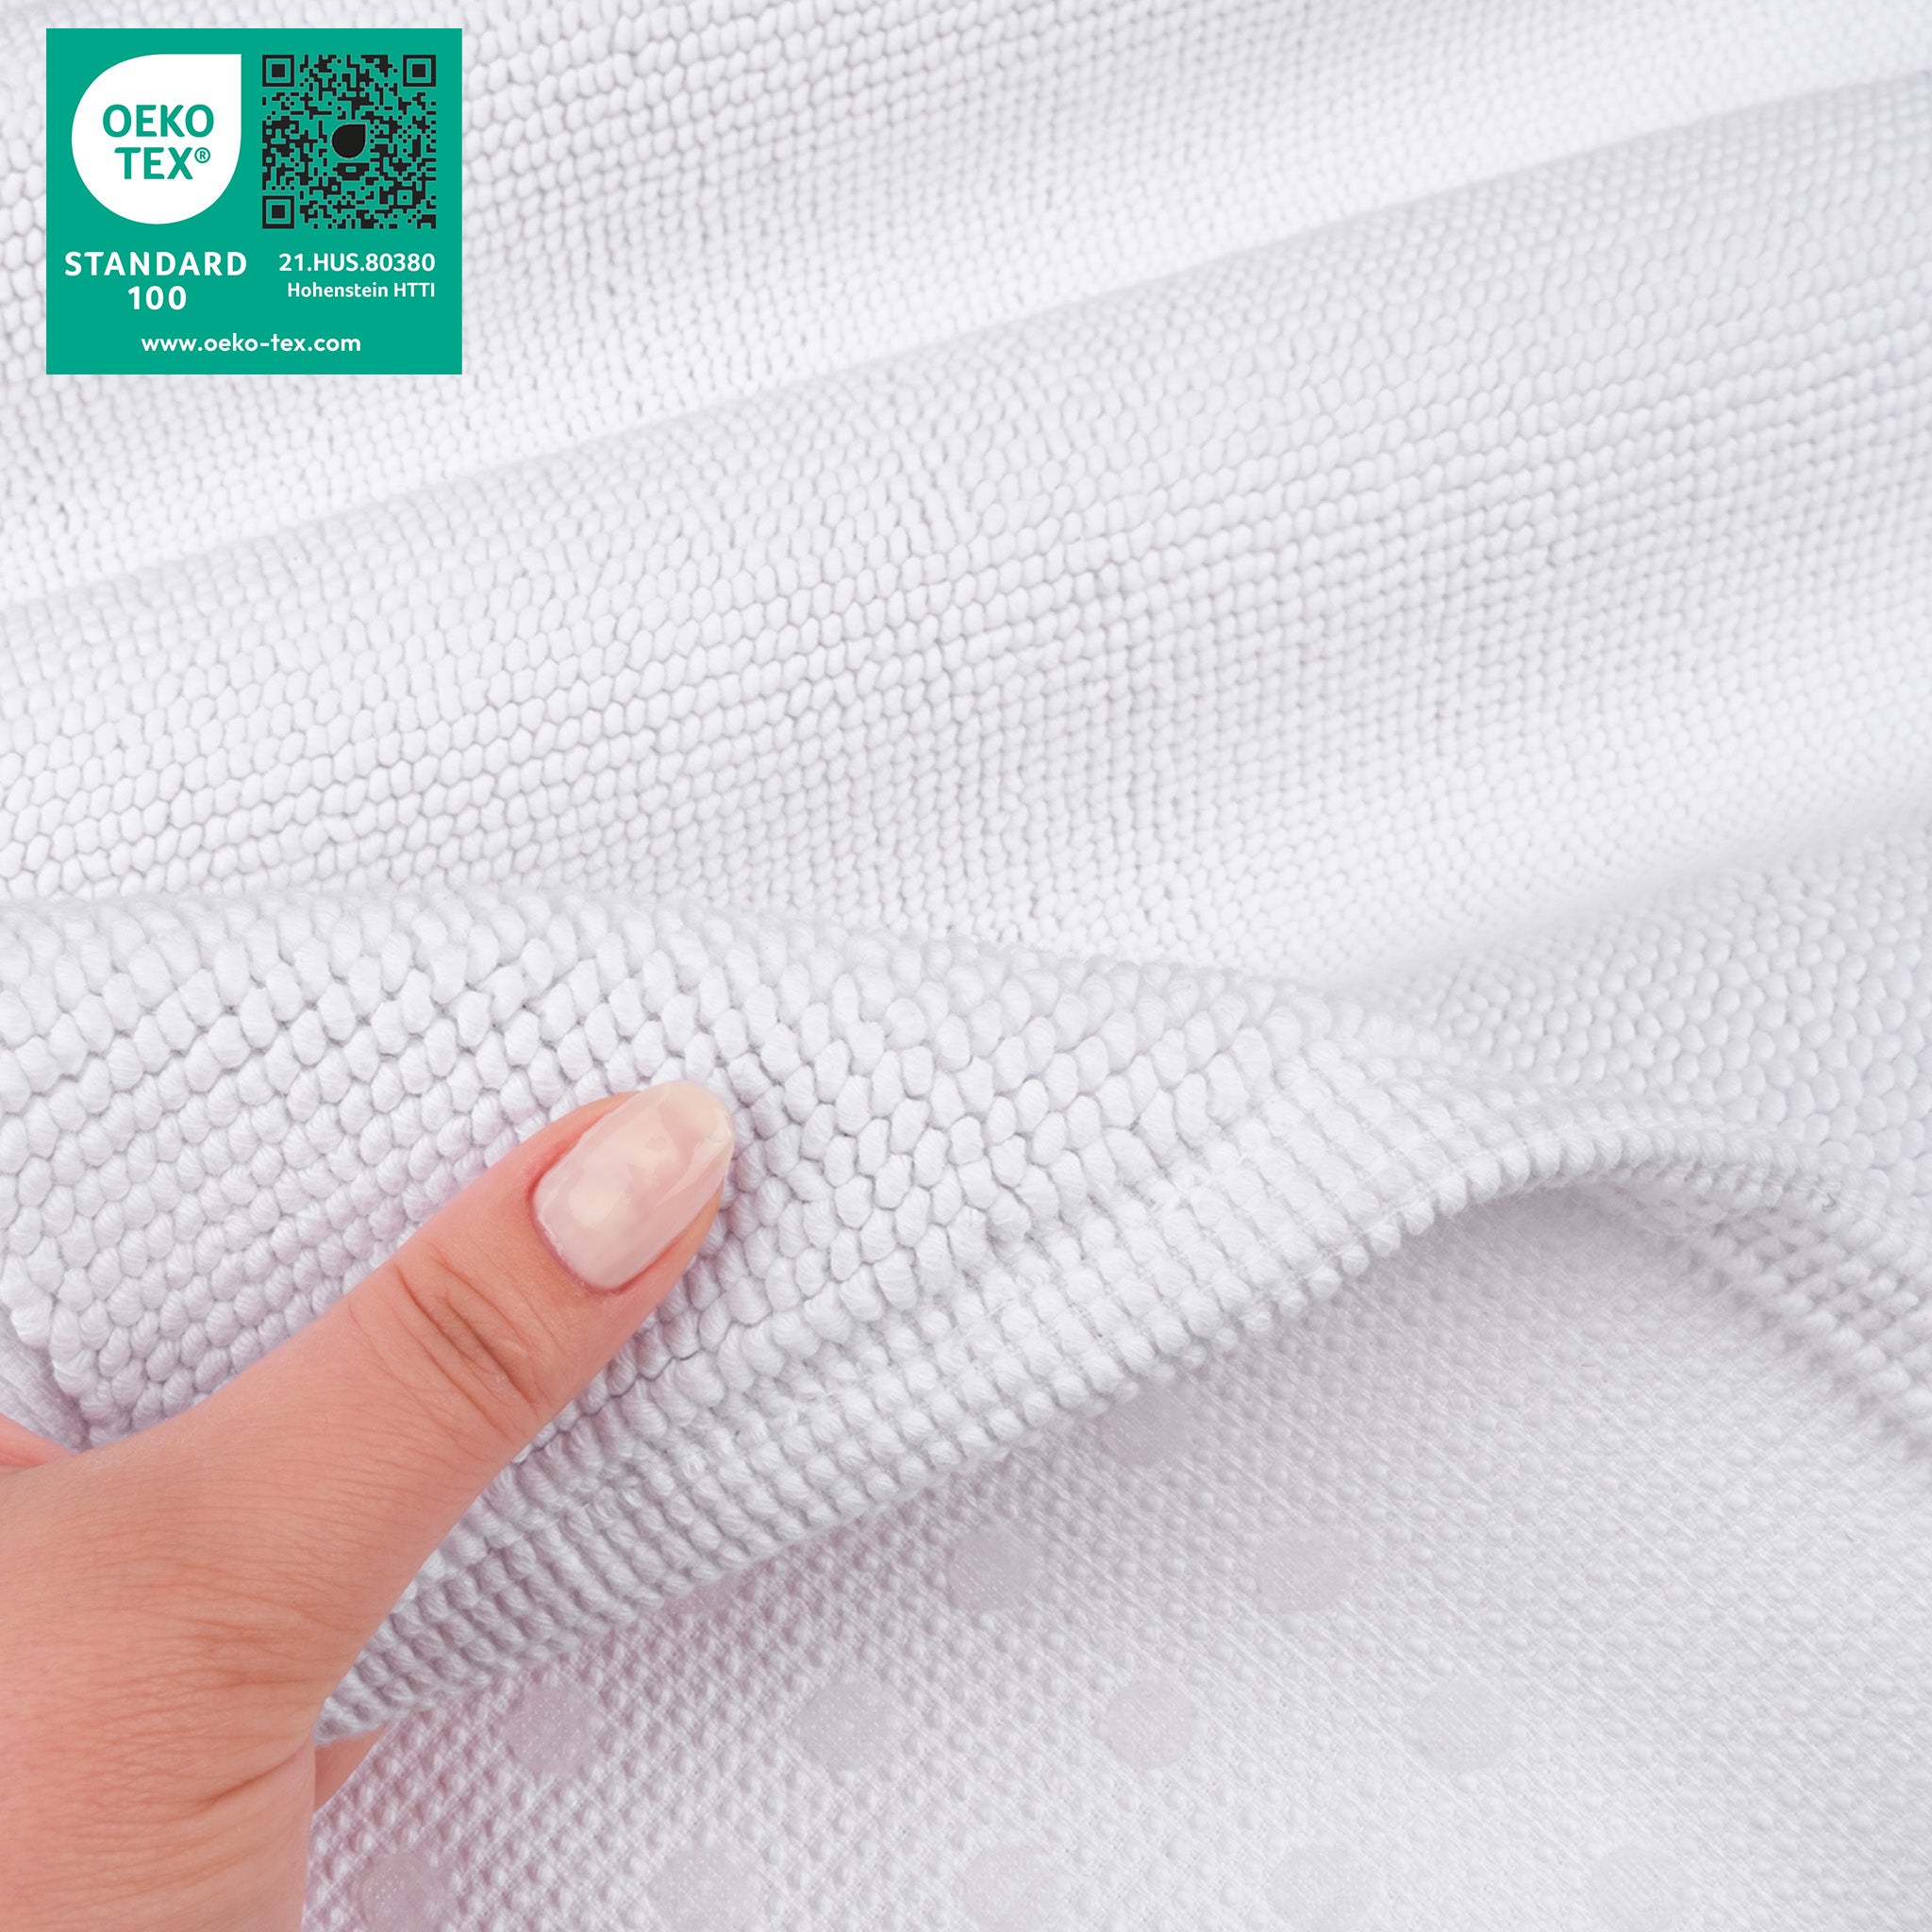 American Soft Linen 100% Cotton Non-Slip 17x24 Inch Bath Rug white-5